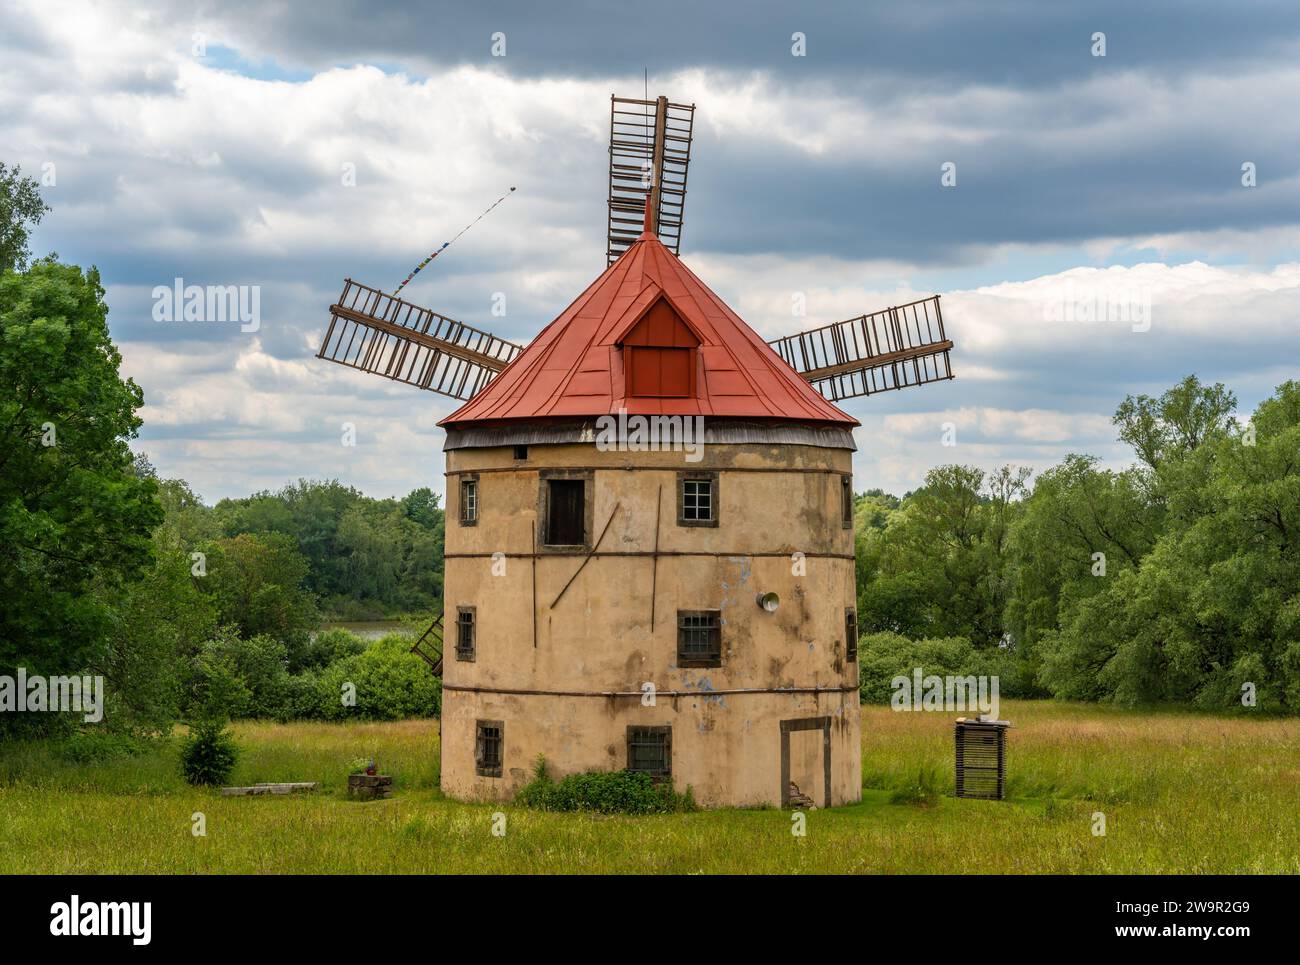 Moulin à vent historique Svetlik de 1843 dans le village de Horni Podluzi, région d'Usti nad Labem, classé monument culturel de la République tchèque Banque D'Images